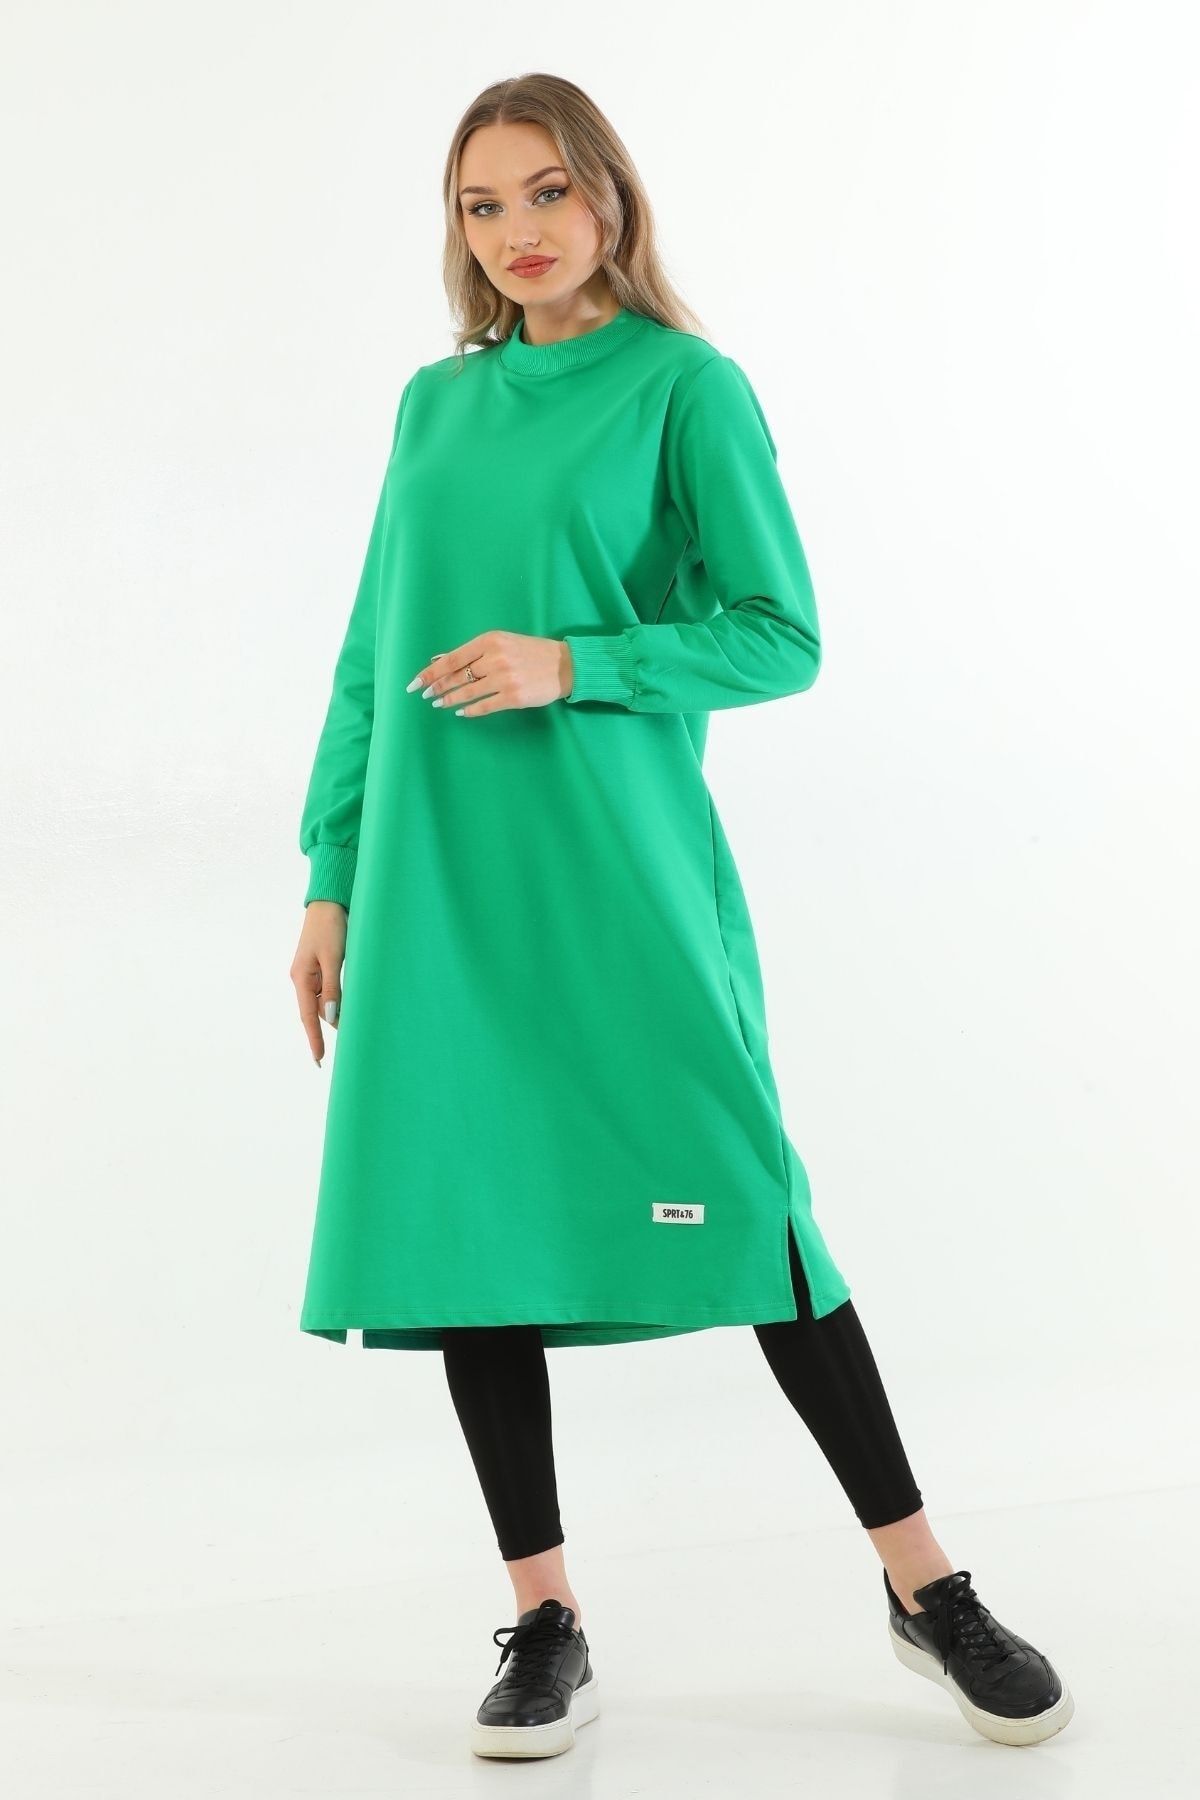 Elif Okur Tesettür Uzun Tunik 110cm Yeşil 1219